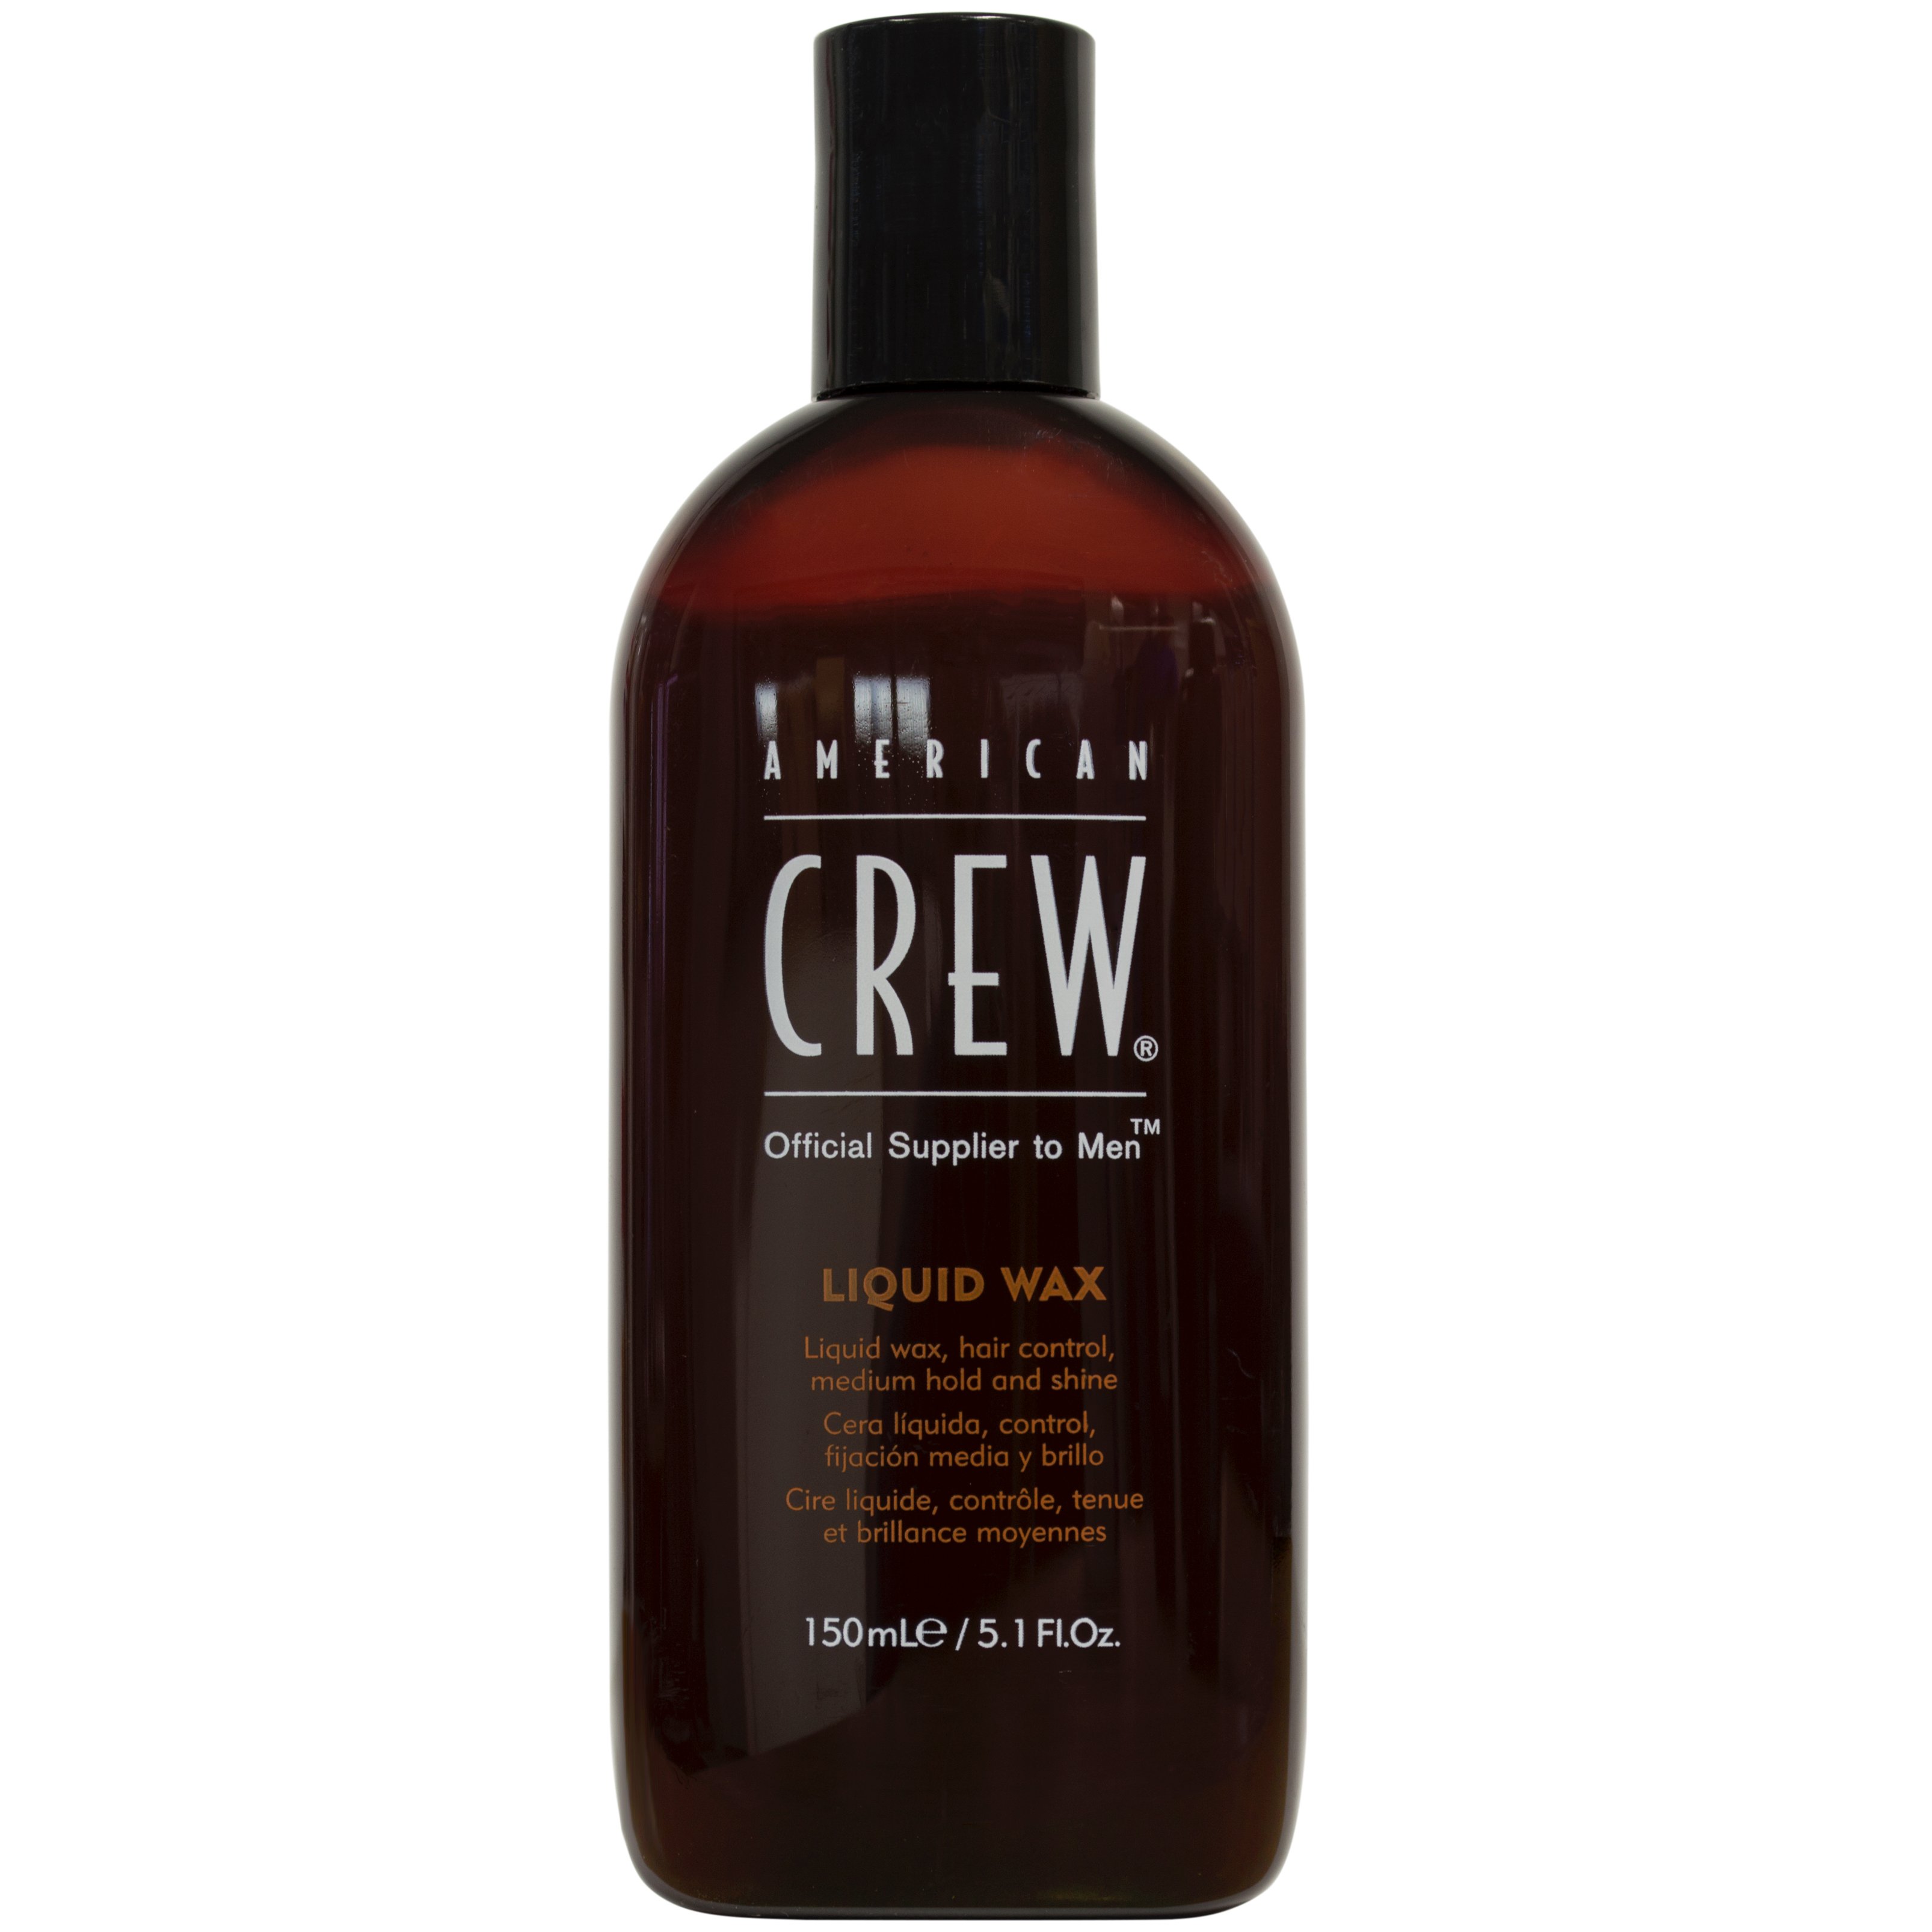 American Crew Liquid Wax - Shop Hair Care at H-E-B